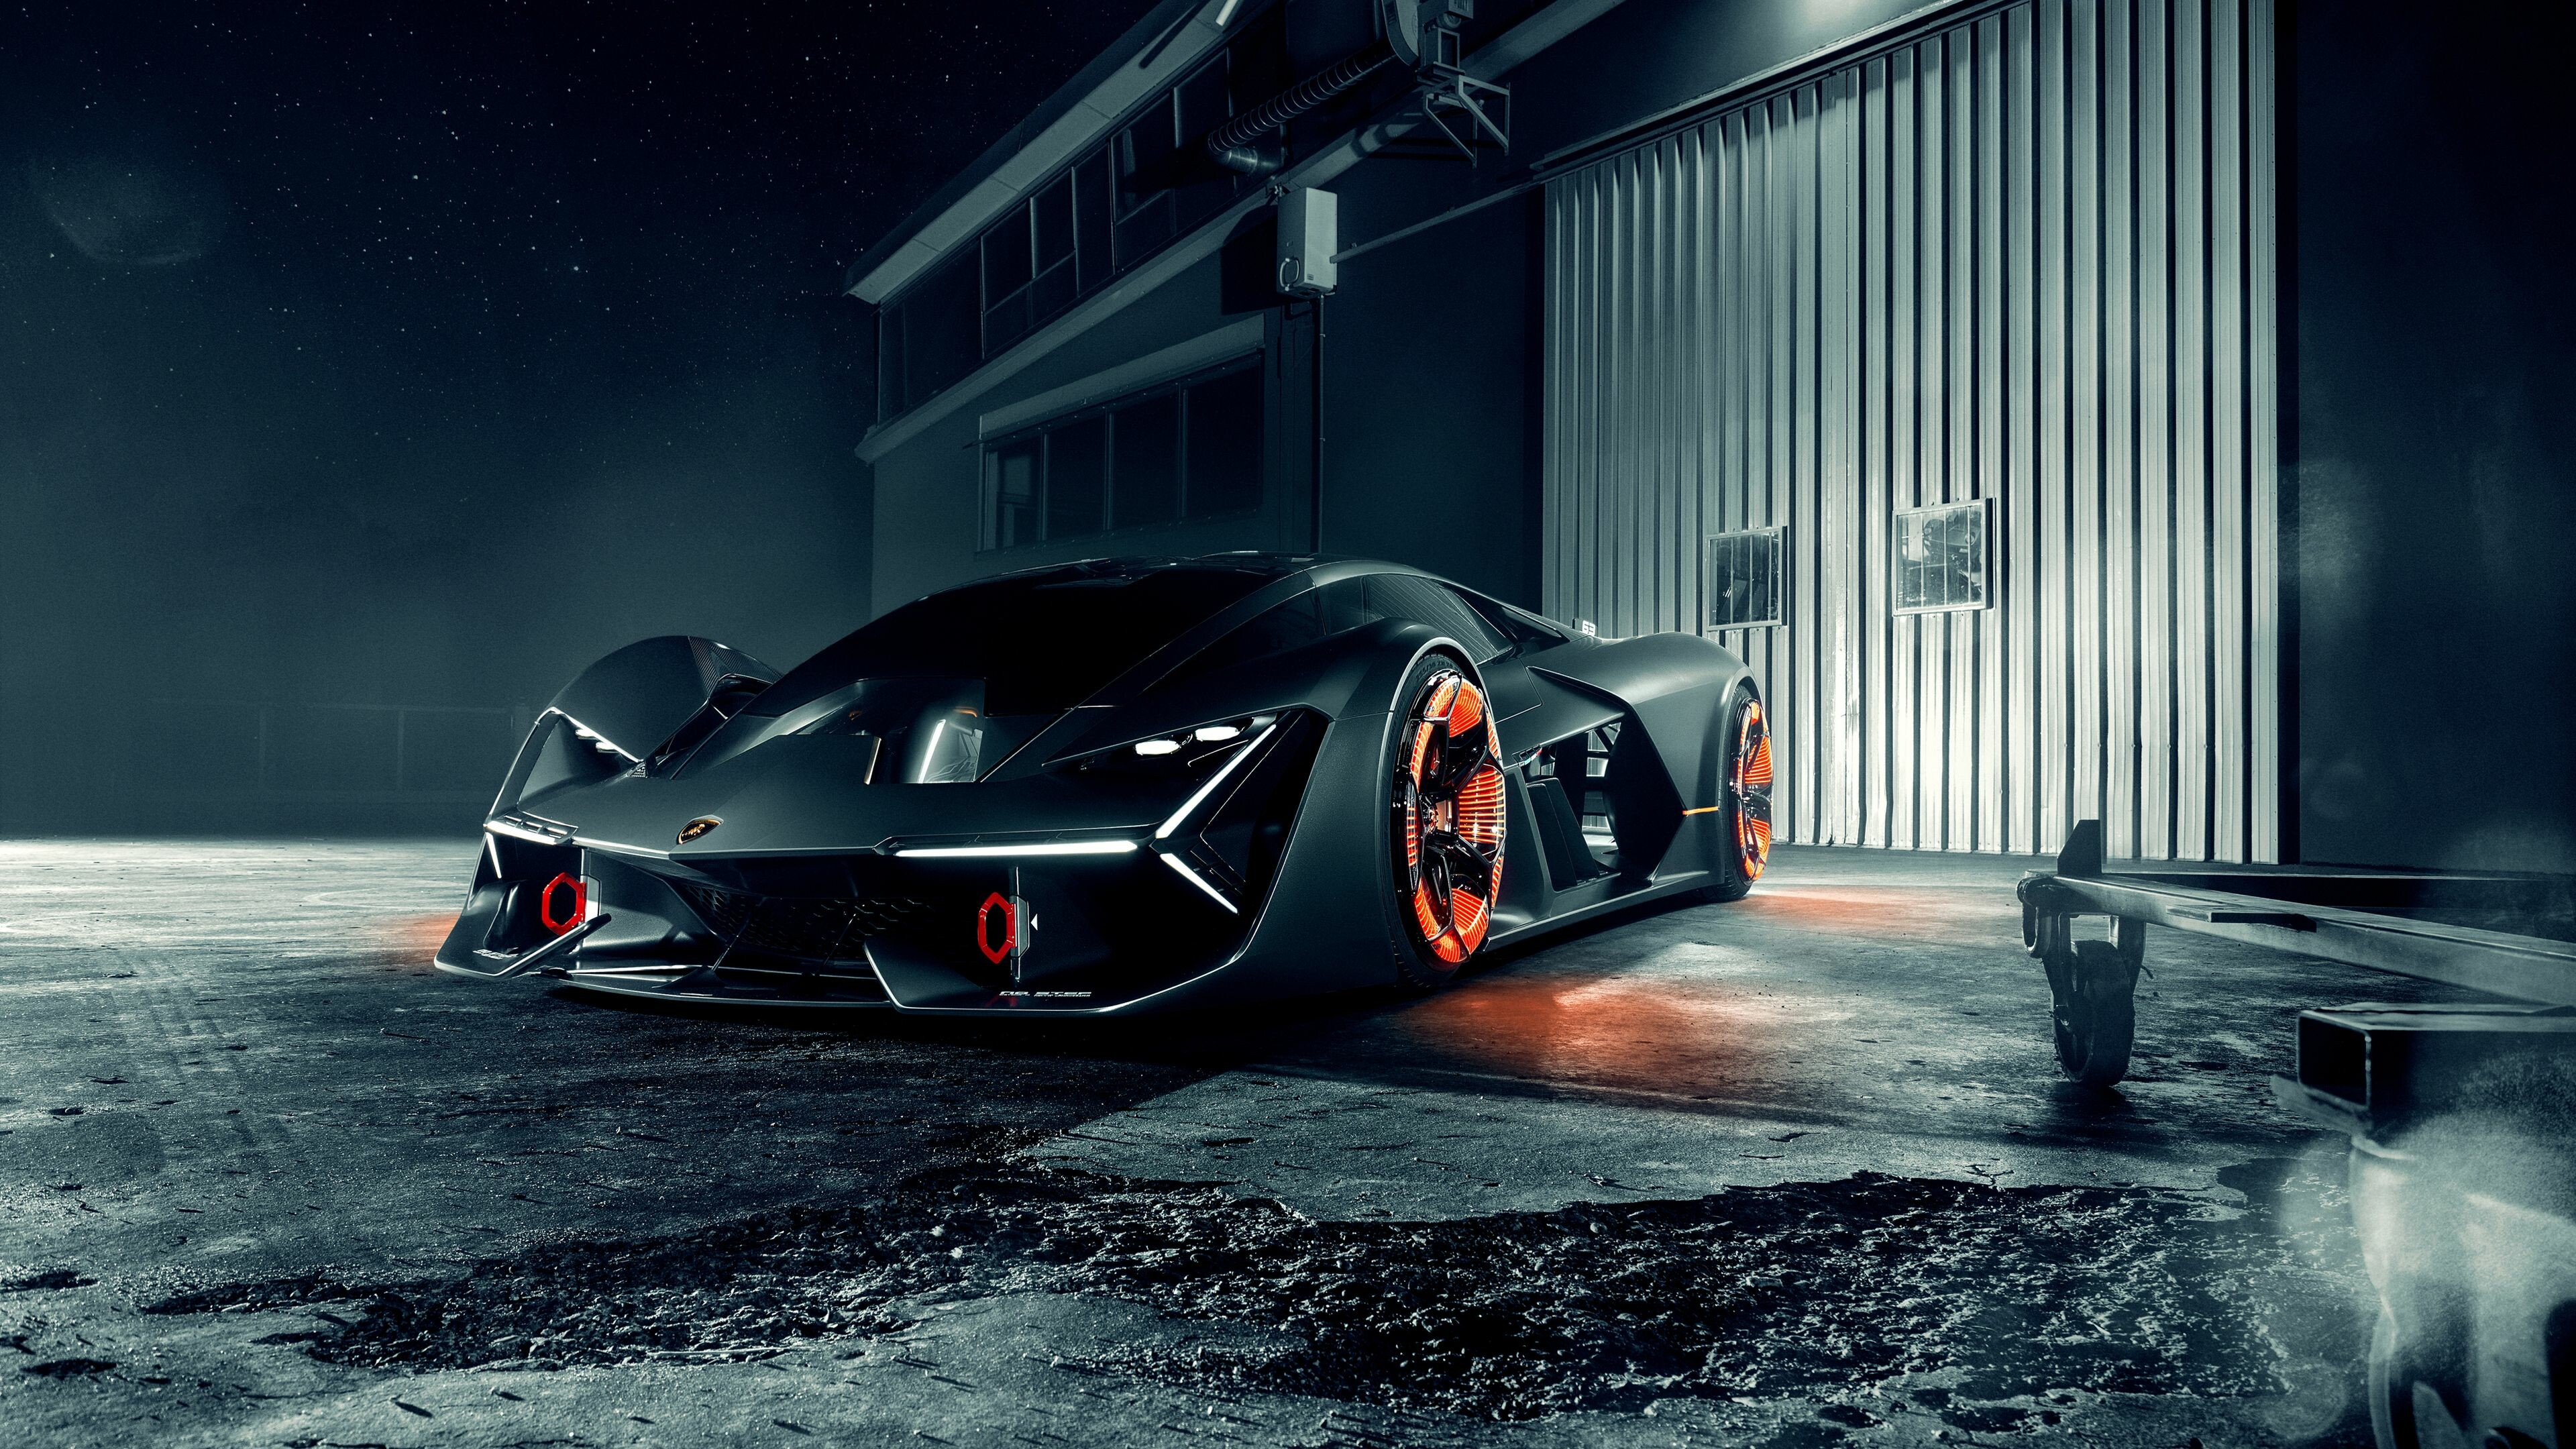 Lamborghini: Terzo Millennio Concept, Italian sports cars. 3840x2160 4K Wallpaper.